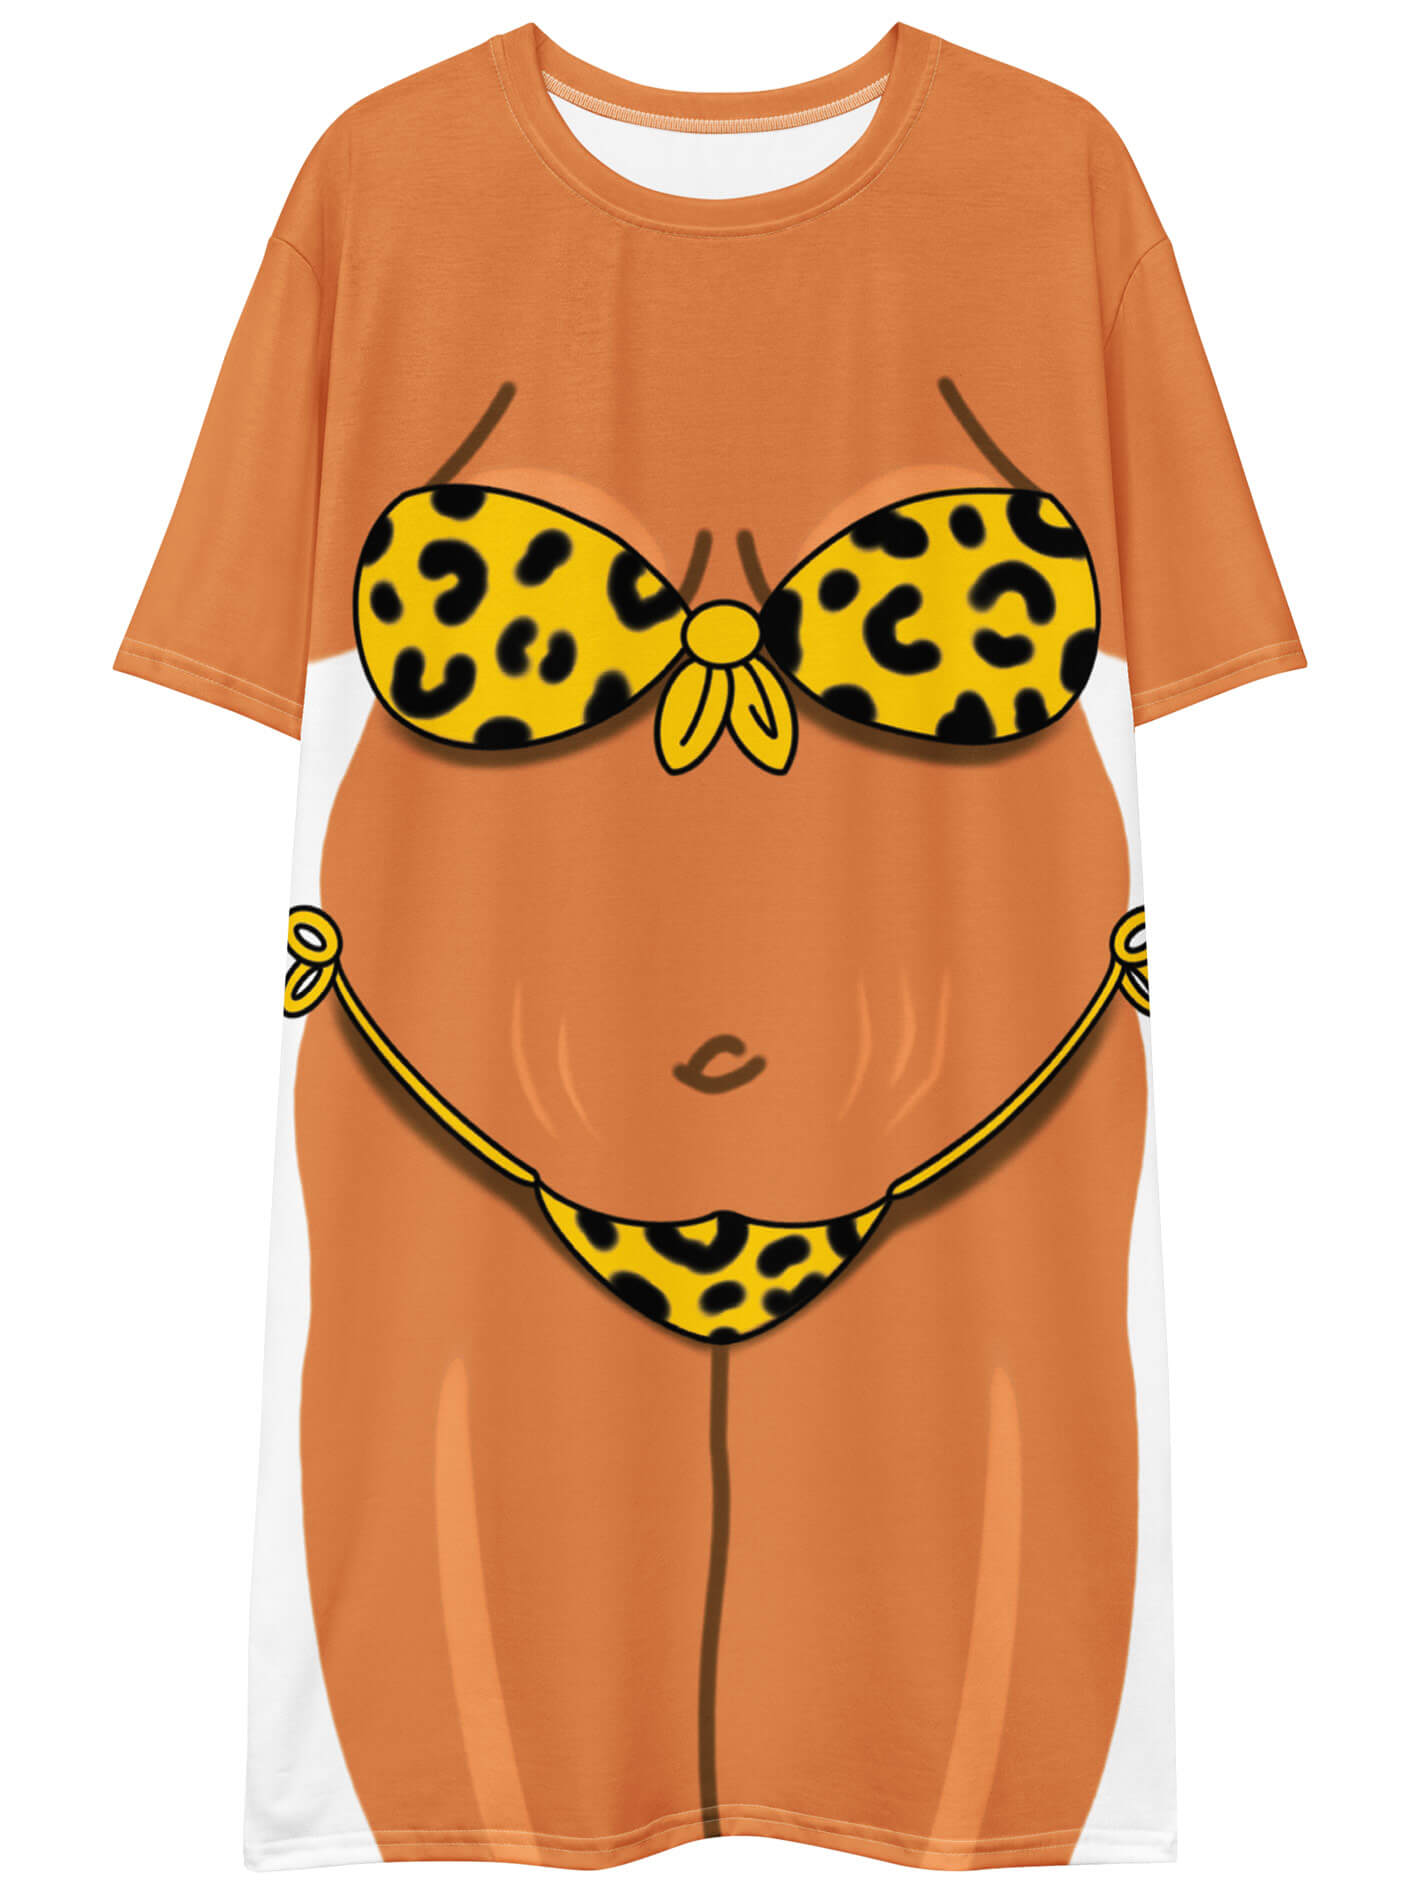 Airbrushed bikini body t-shirt dress plus size.